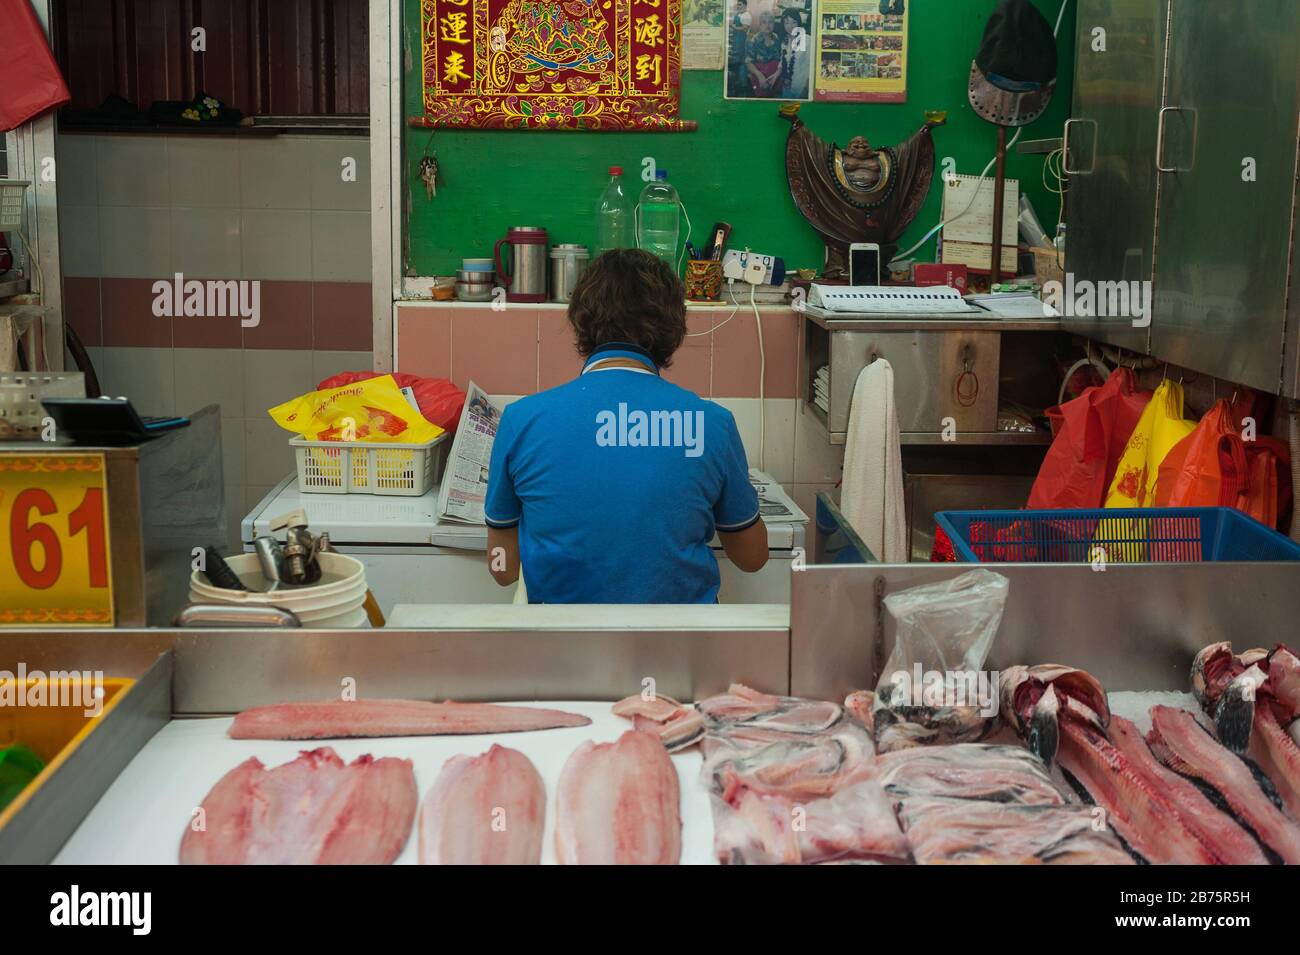 27.07.2017, Singapour, République de Singapour, Asie - un vendeur de poissons du marché chinois prend une pause et lit le journal tout en mangeant. [traduction automatique] Banque D'Images